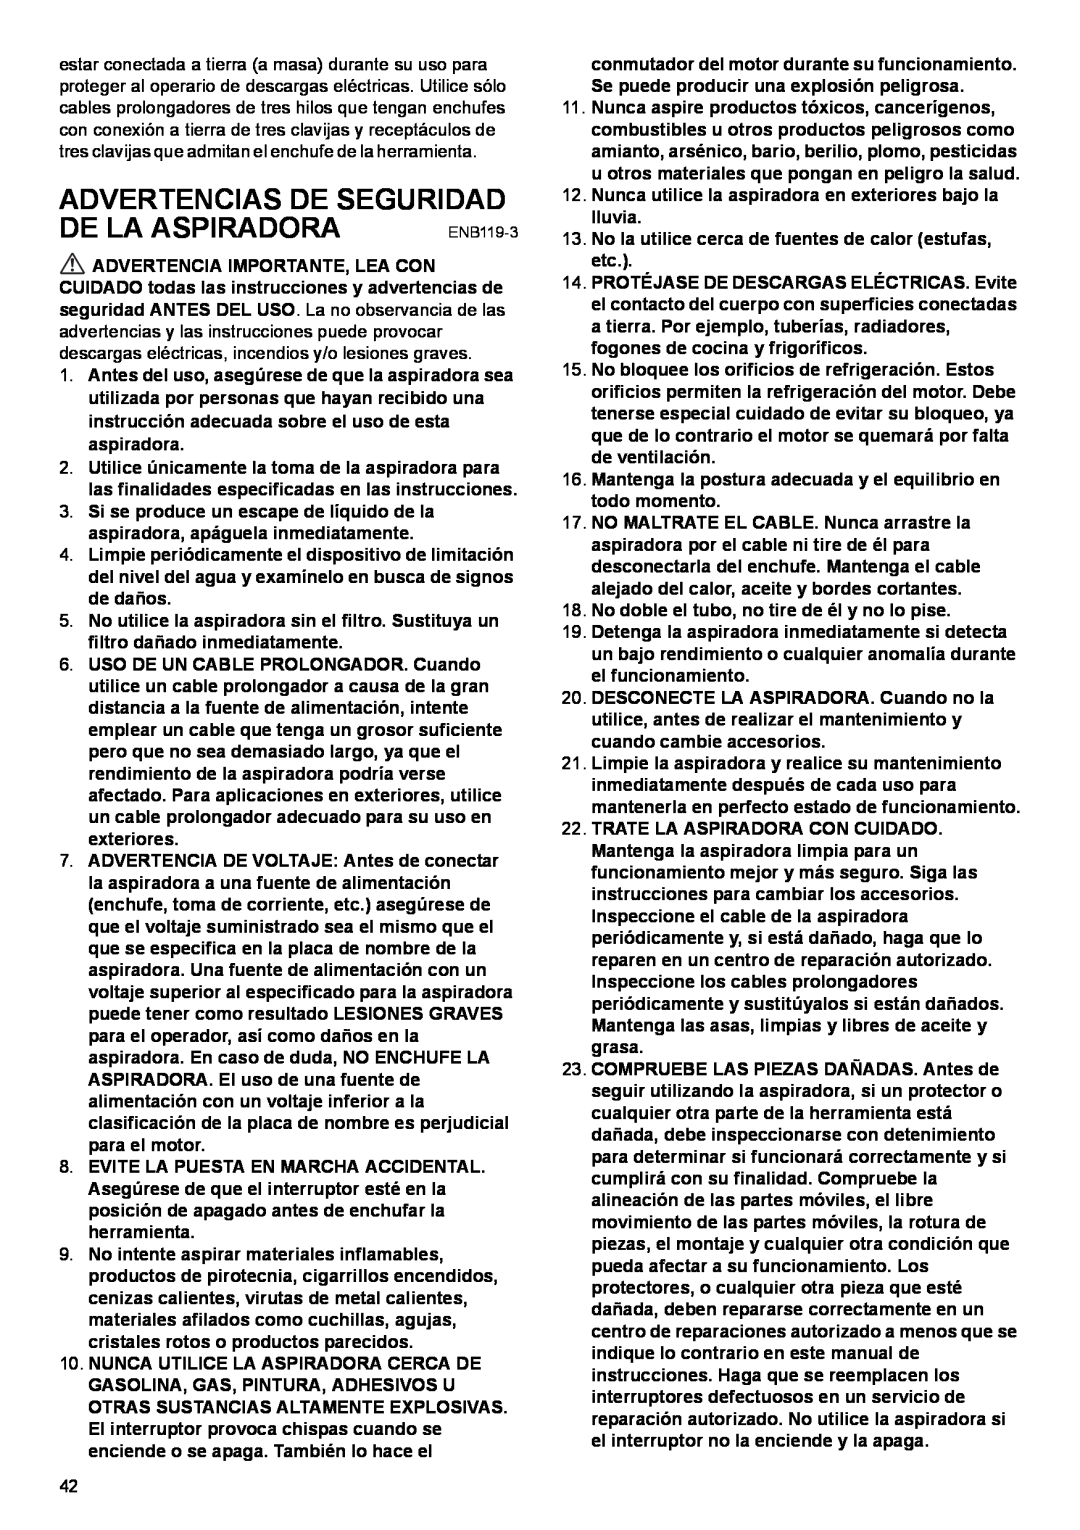 Makita VC2510L, VC3210L, VC1310L instruction manual Advertencias De Seguridad, De La Aspiradora 